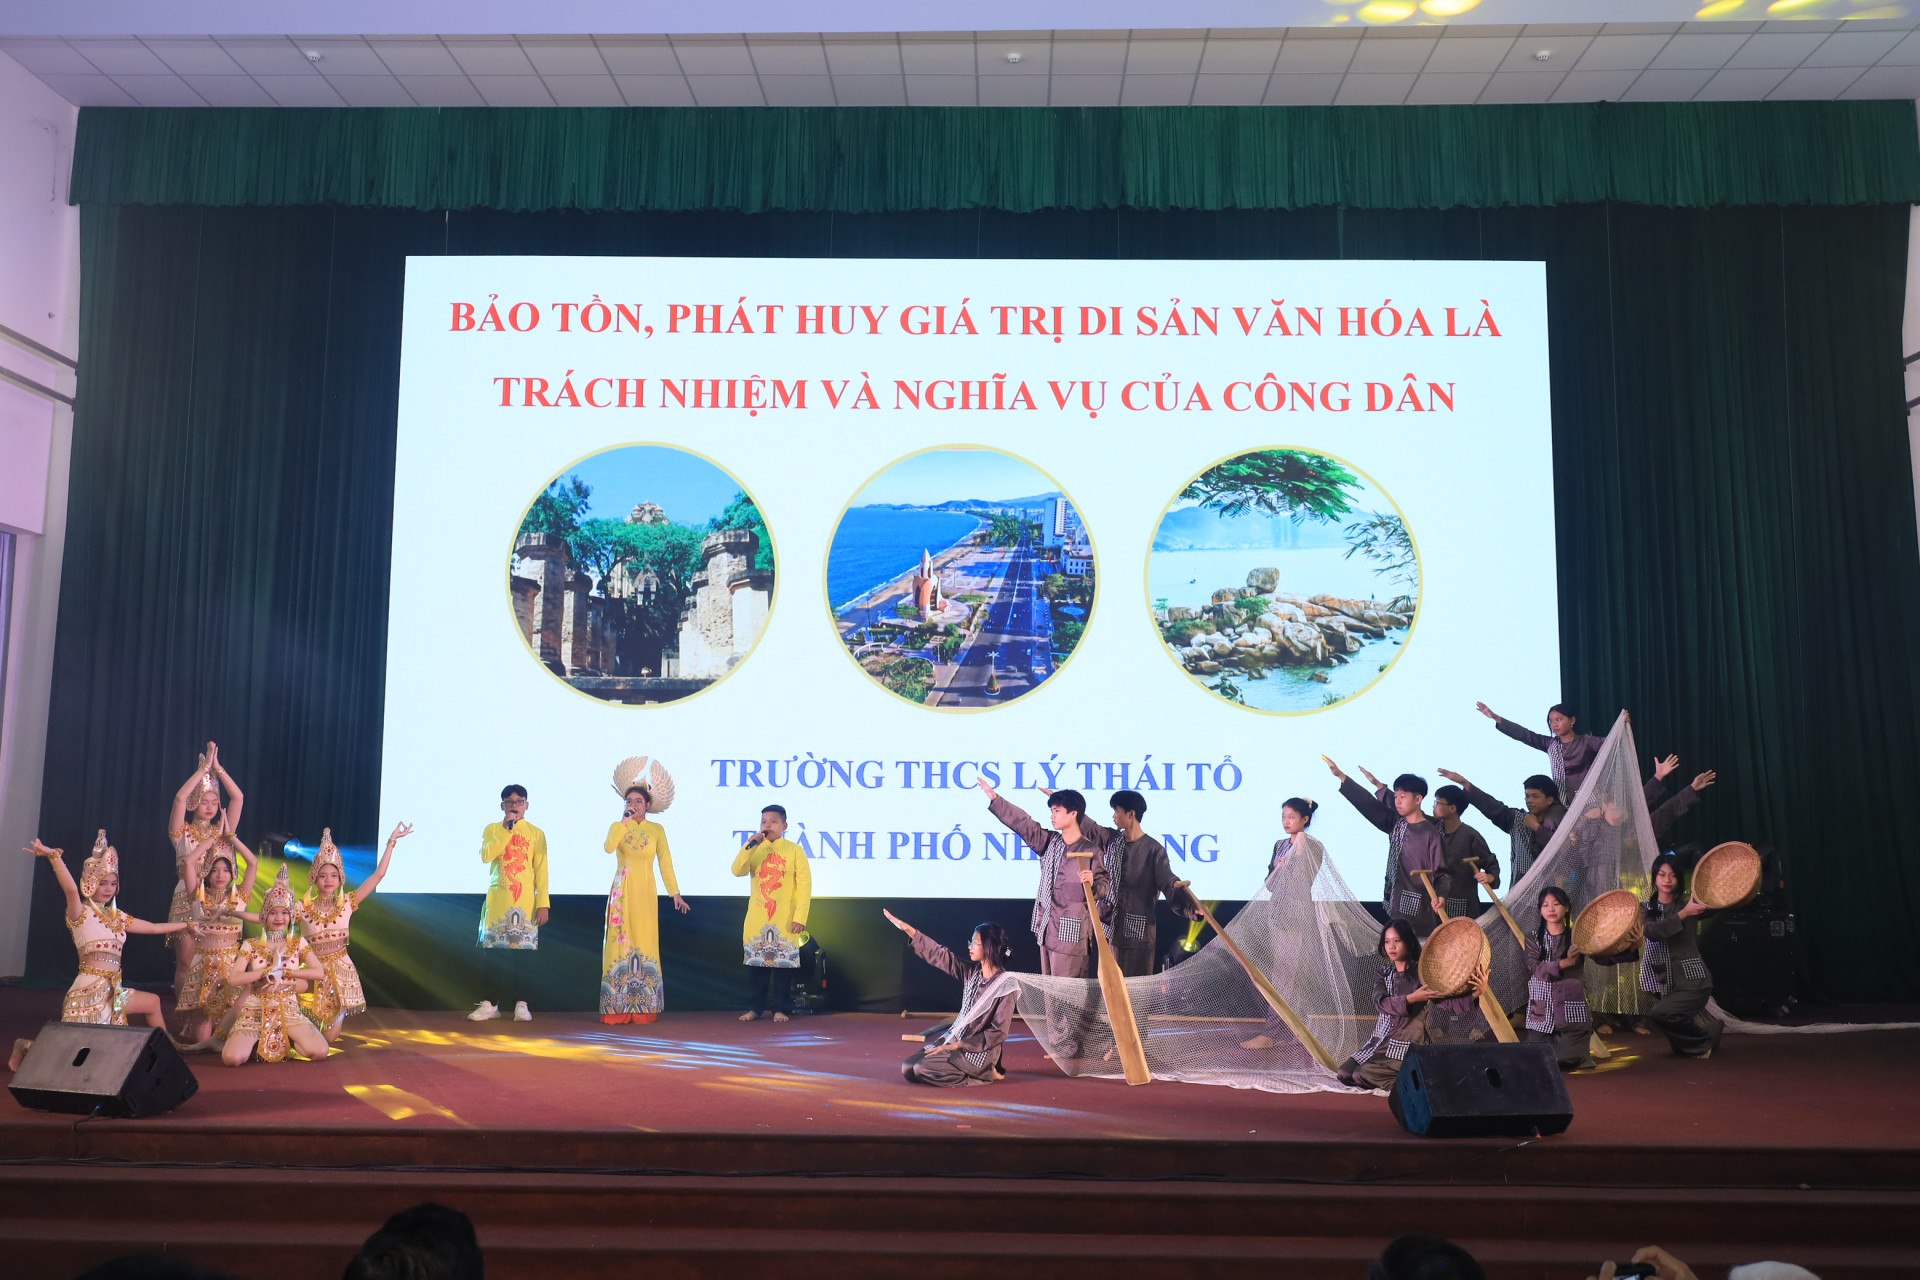 
Phần thi chào hỏi của đội Trường THCS Lý Thái Tổ.